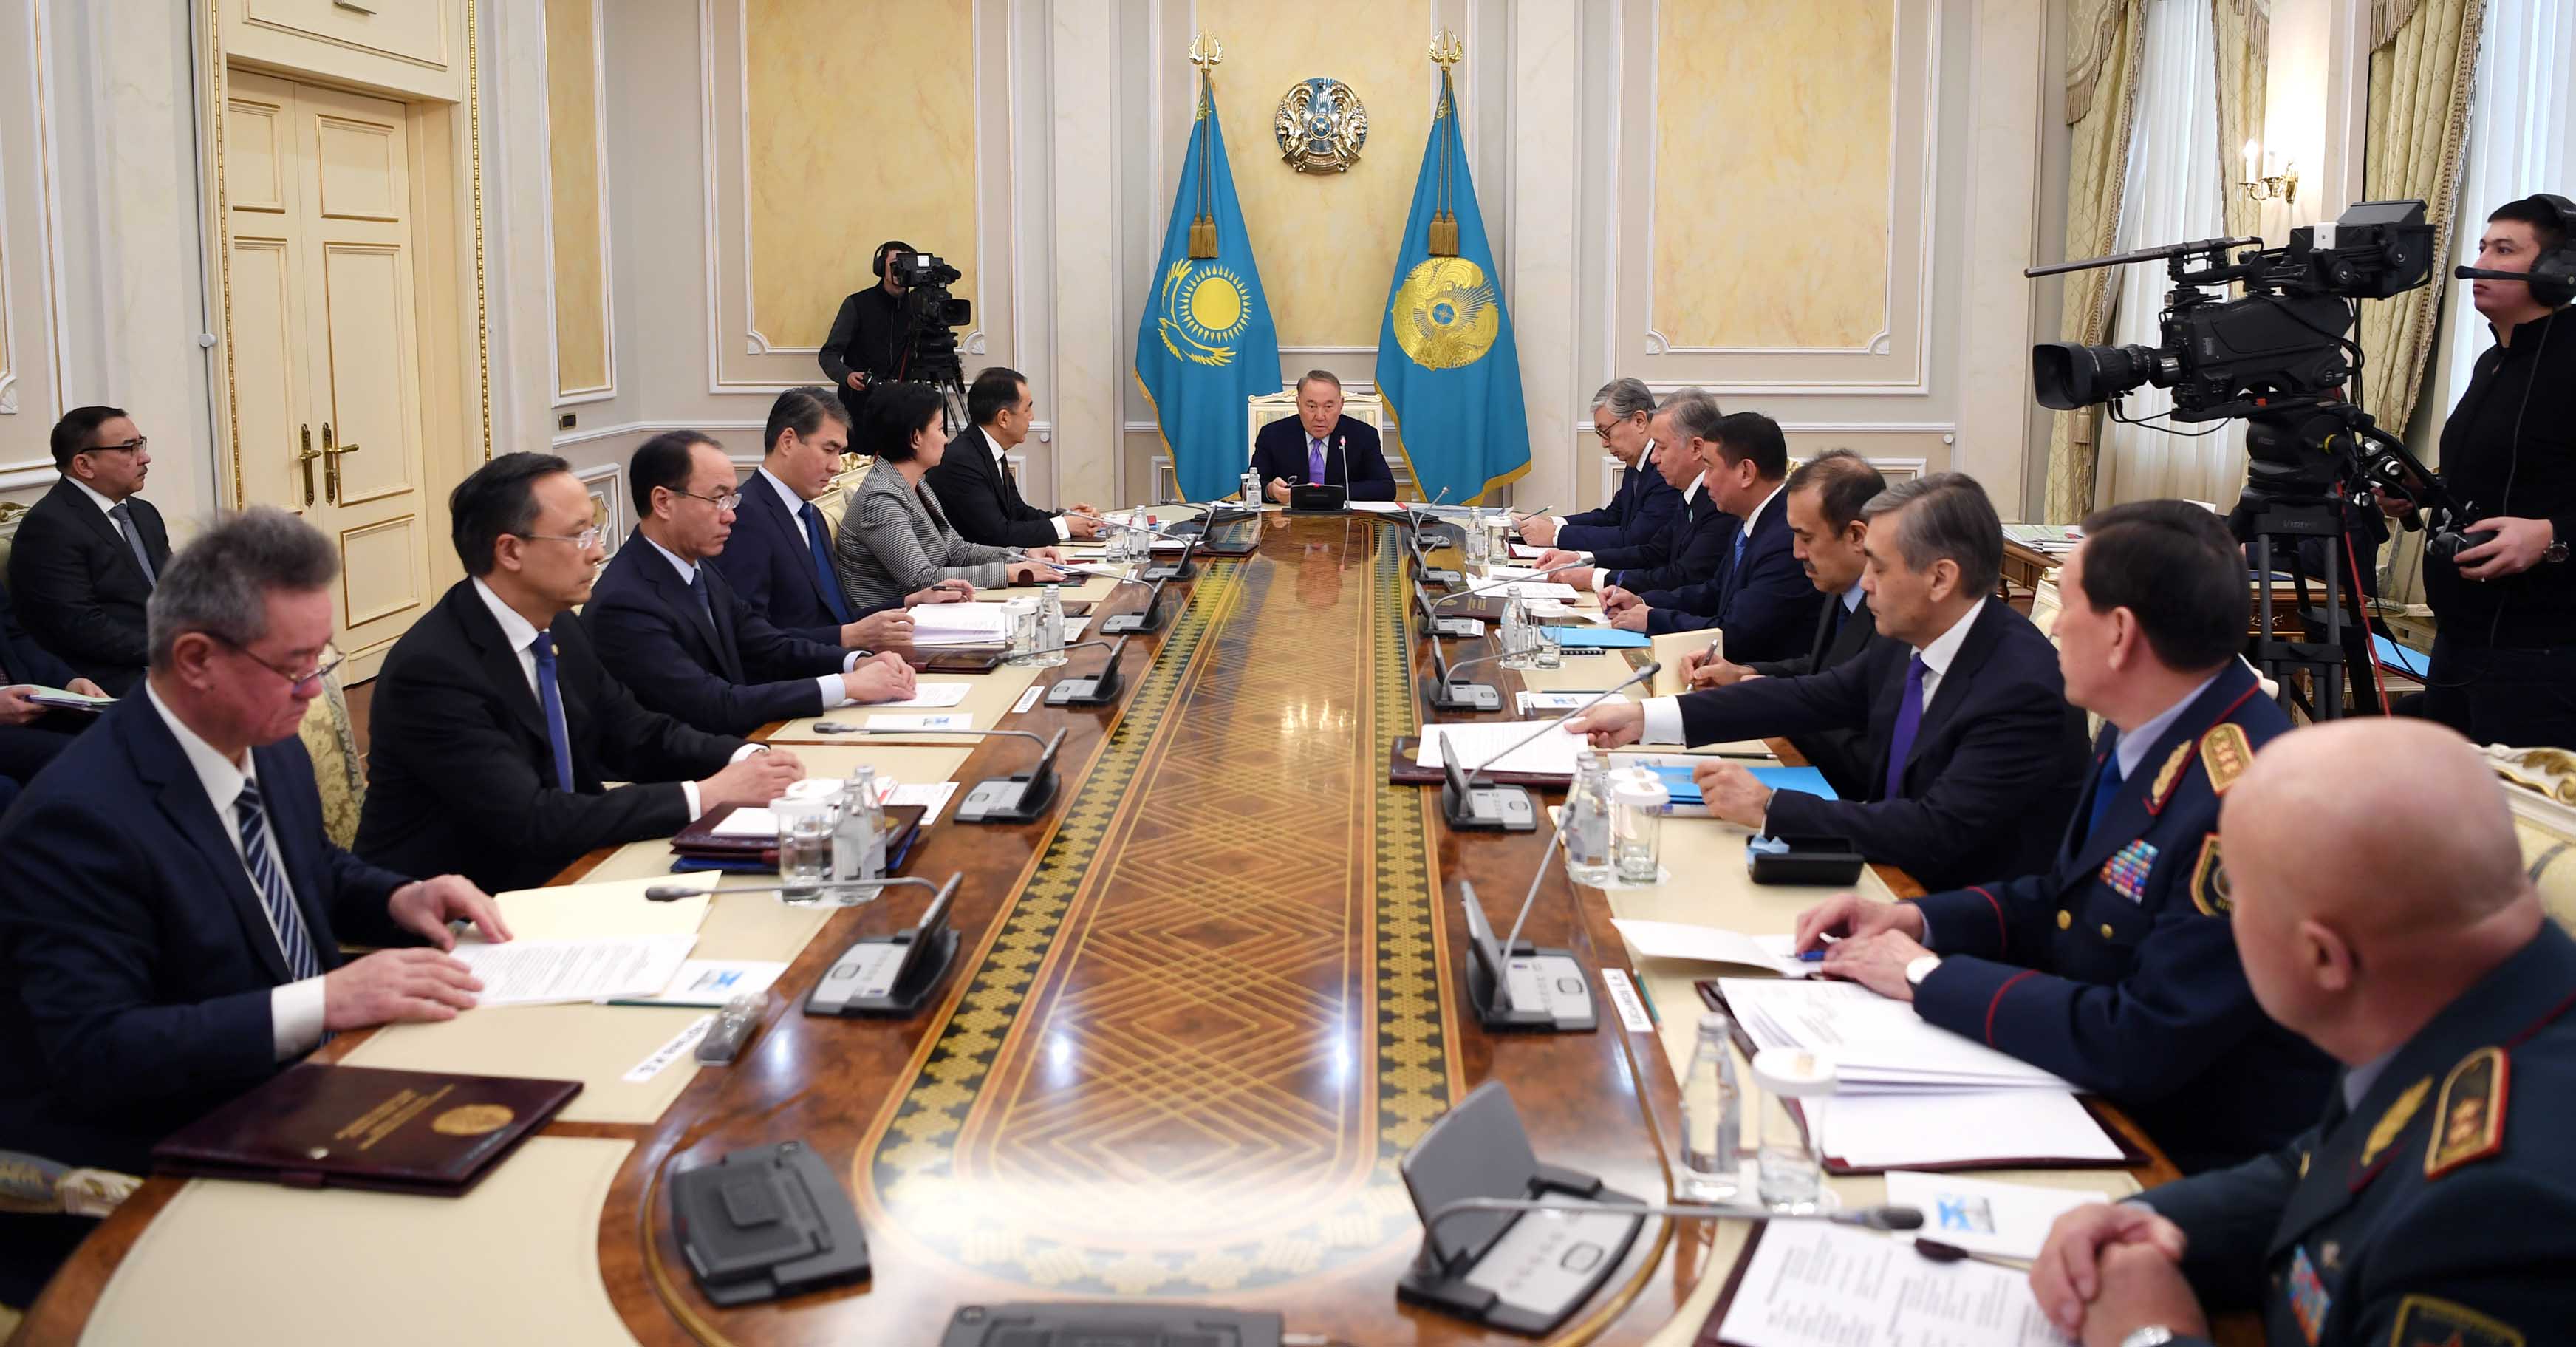 Совбез Казахстана обсудил вопросы безопасности страны в условиях международных санкций 